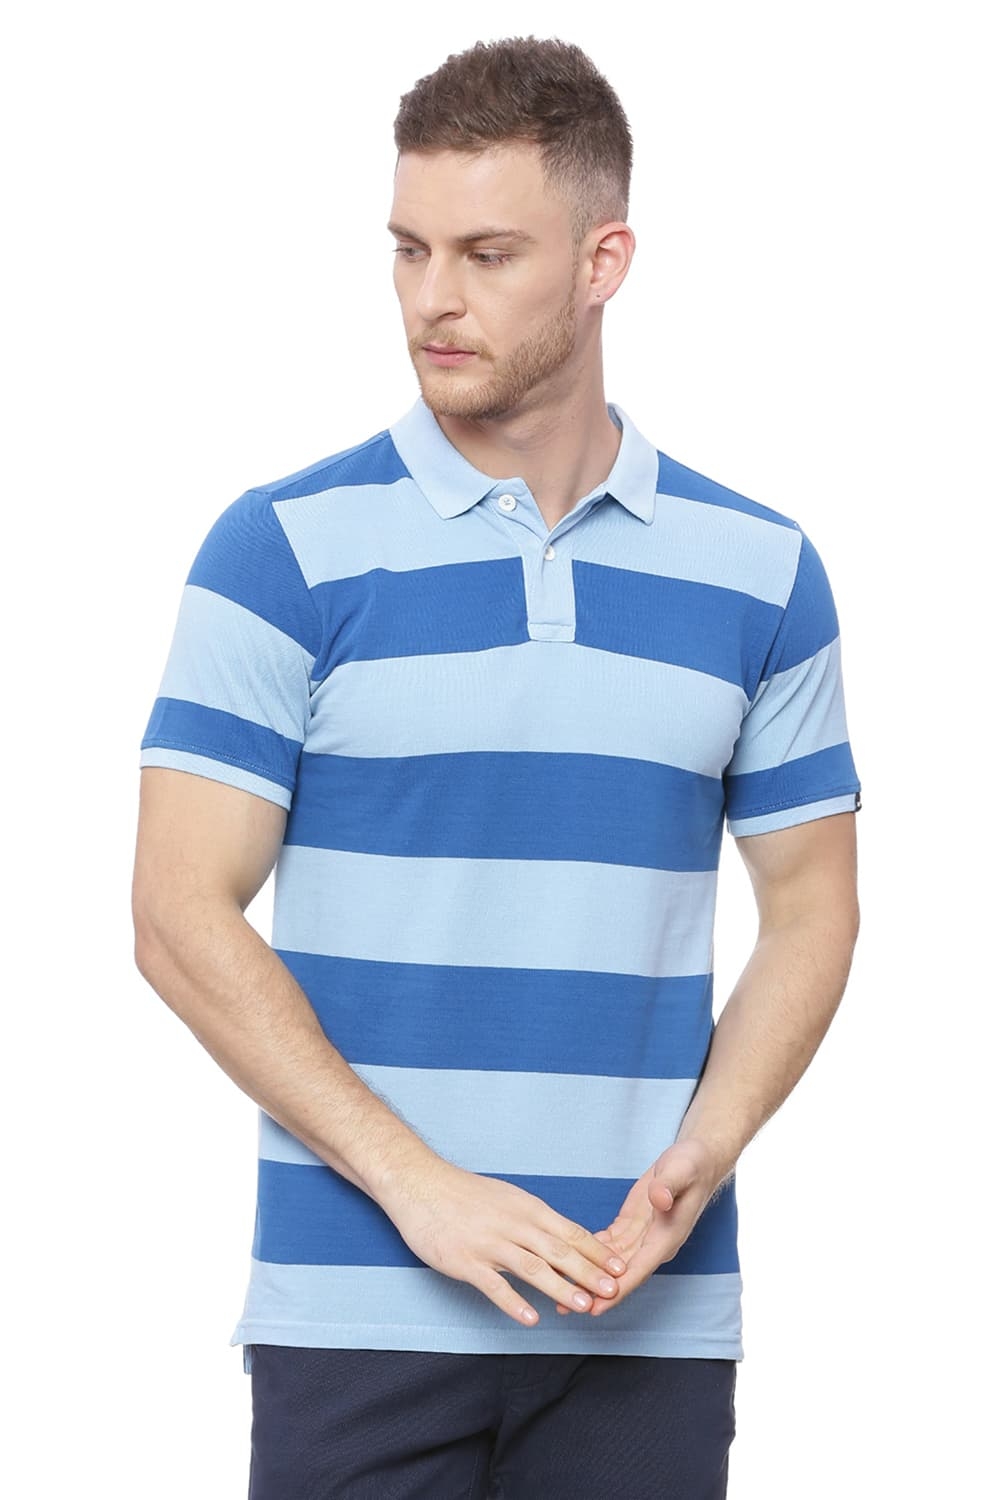 BASICS | Basics Muscle Fit Angel Falls Blue Polo T Shirt